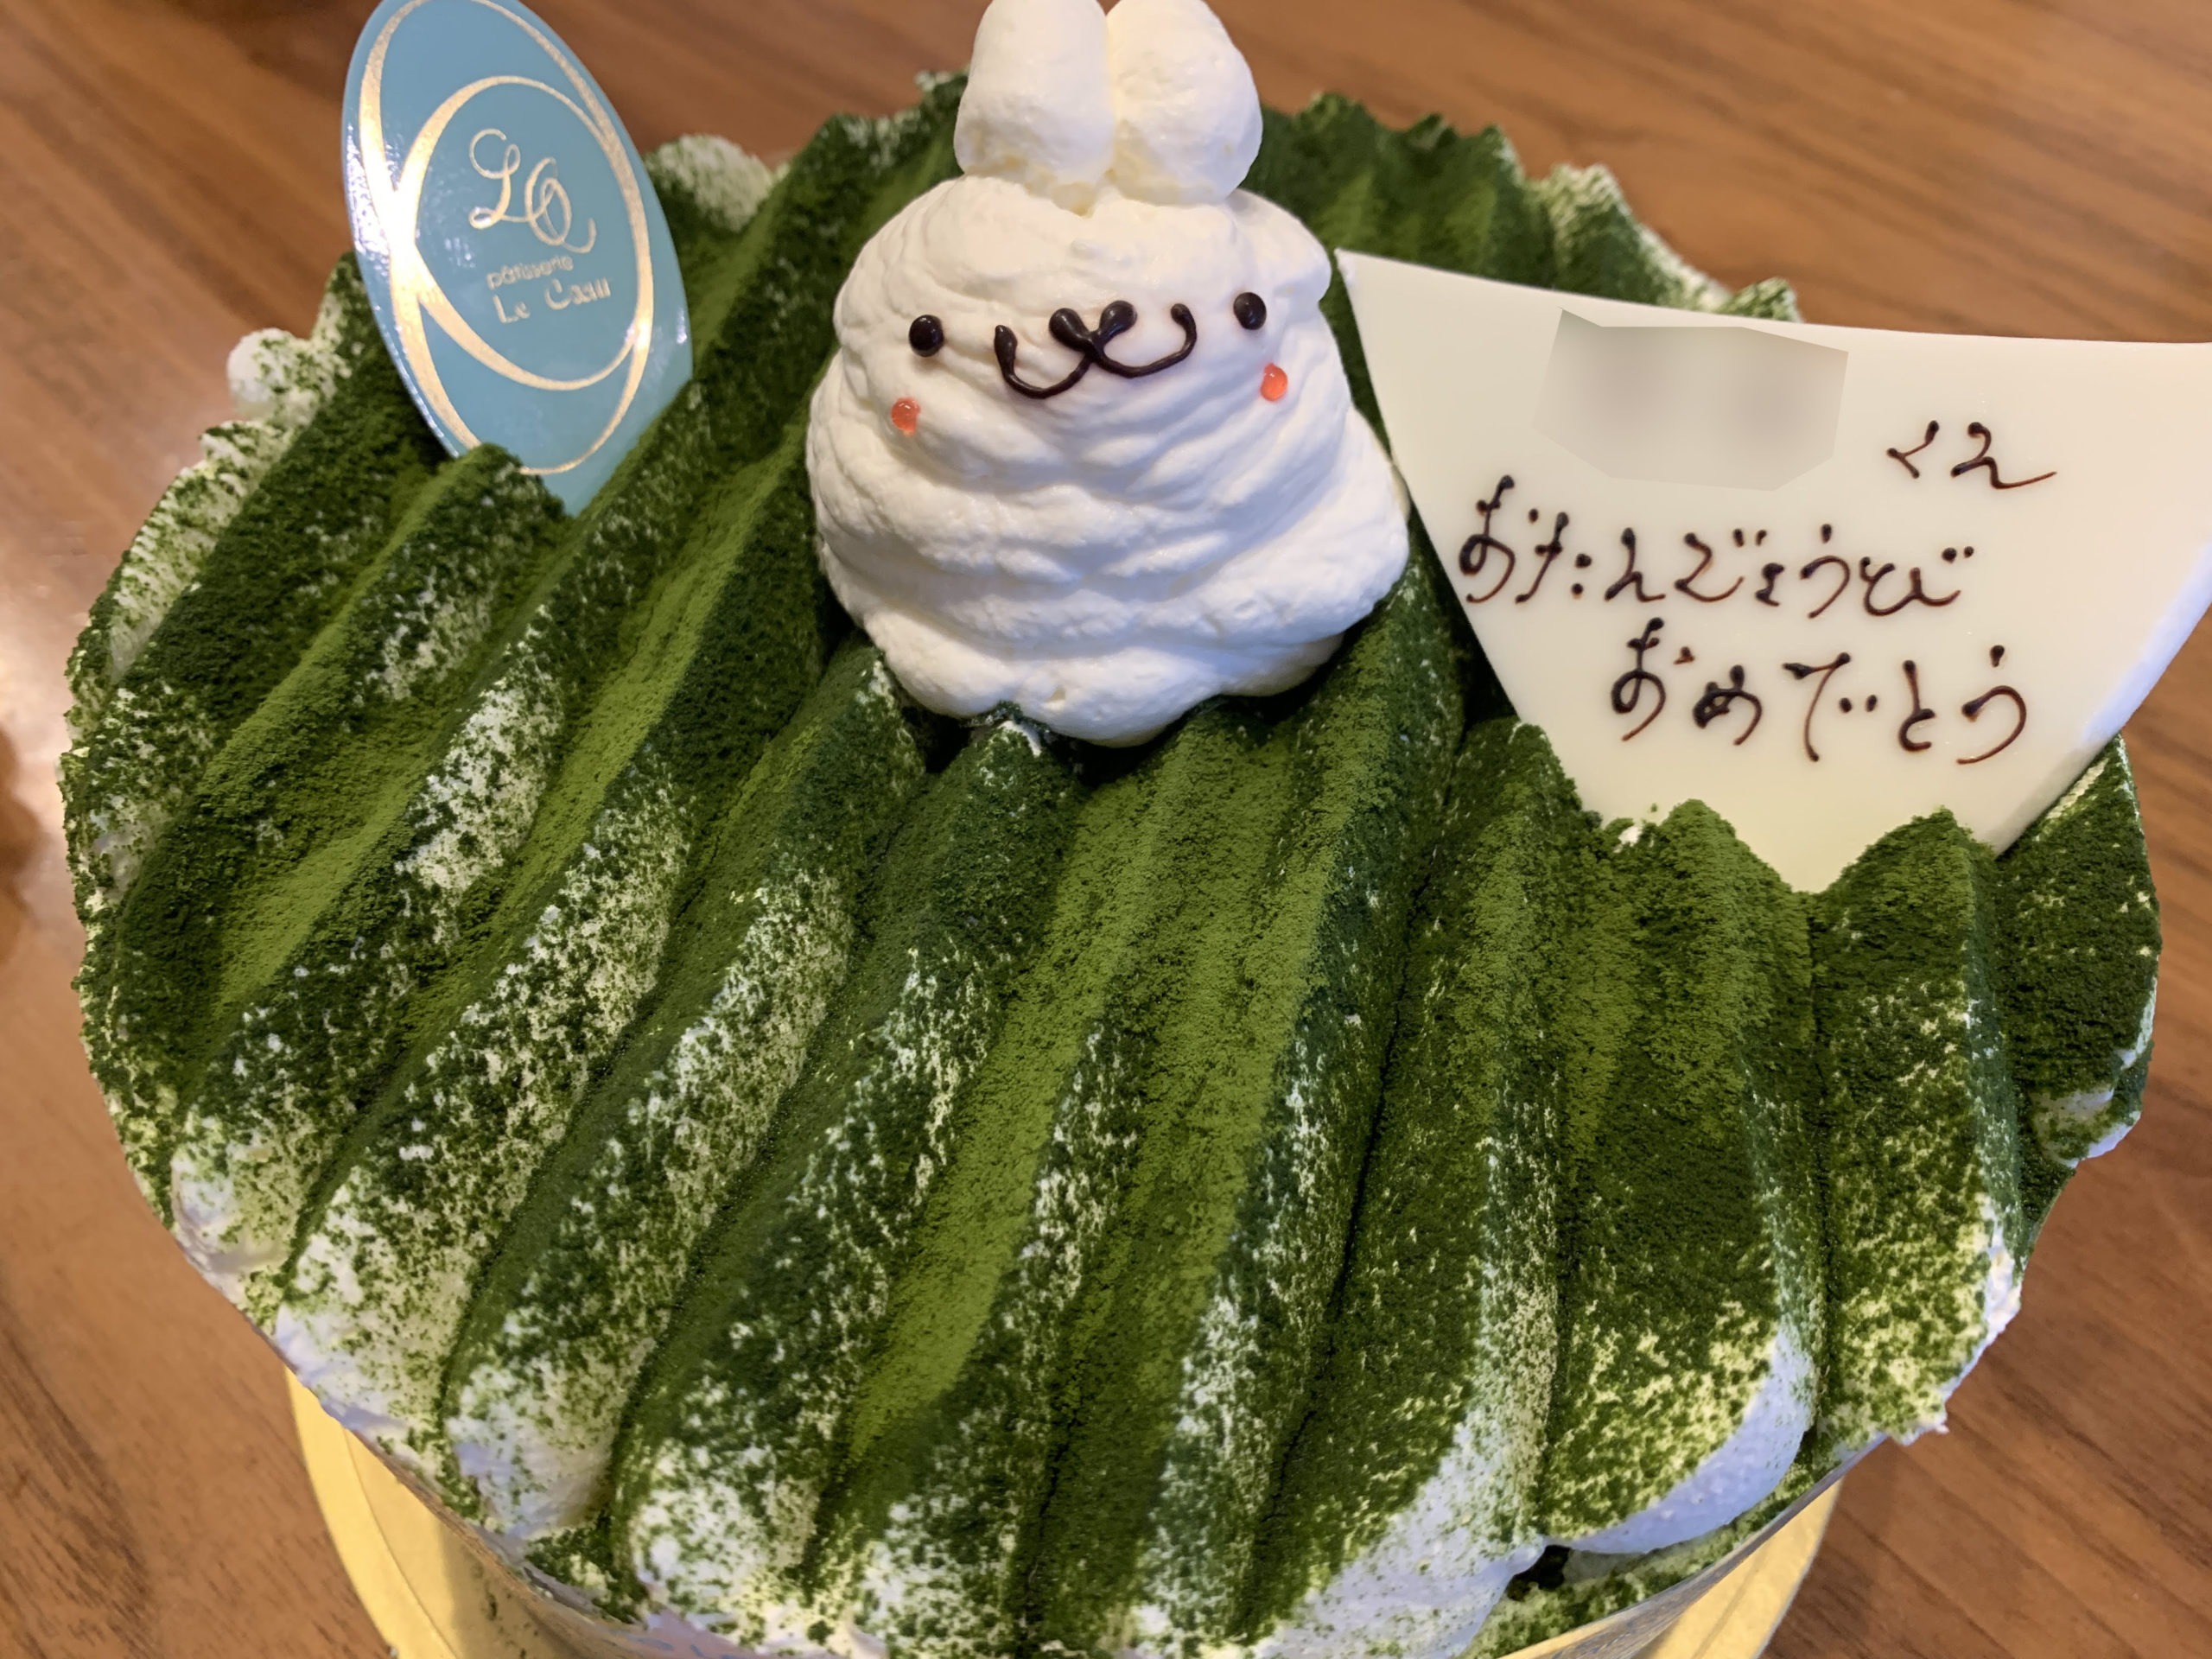 富山県ケーキ屋さん ルクールの誕生日ケーキは可愛くておすすめ 富山県のママ向け情報